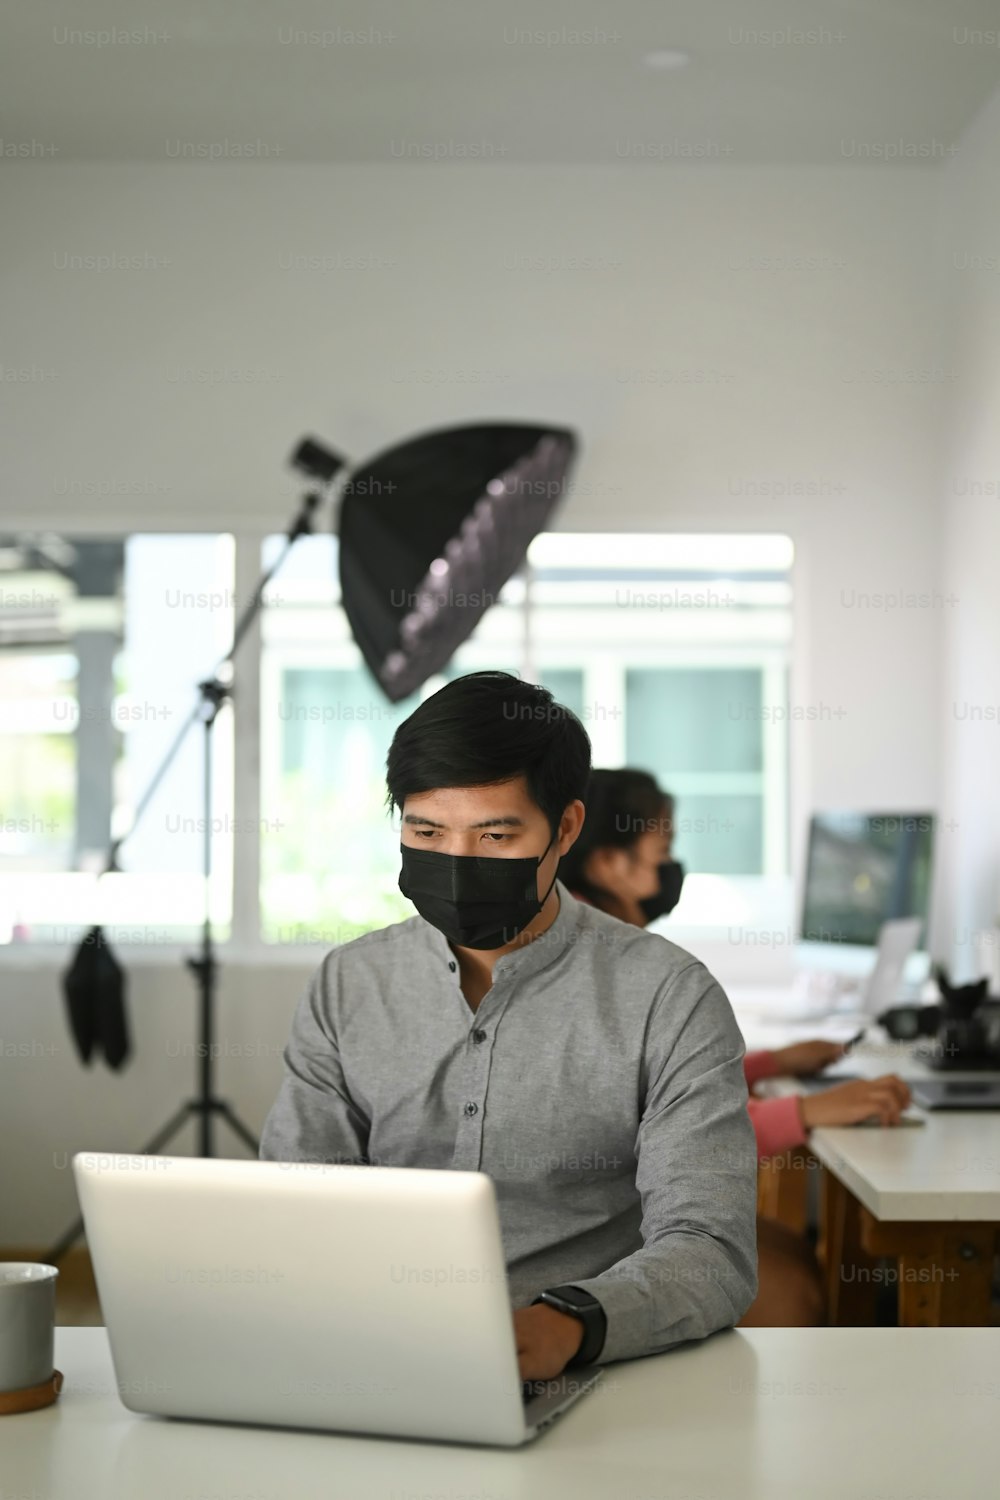 Ritratto di fotografo freelance maschio con maschera facciale sta controllando le foto su un laptop mentre è seduto al tavolo nella postazione di lavoro.